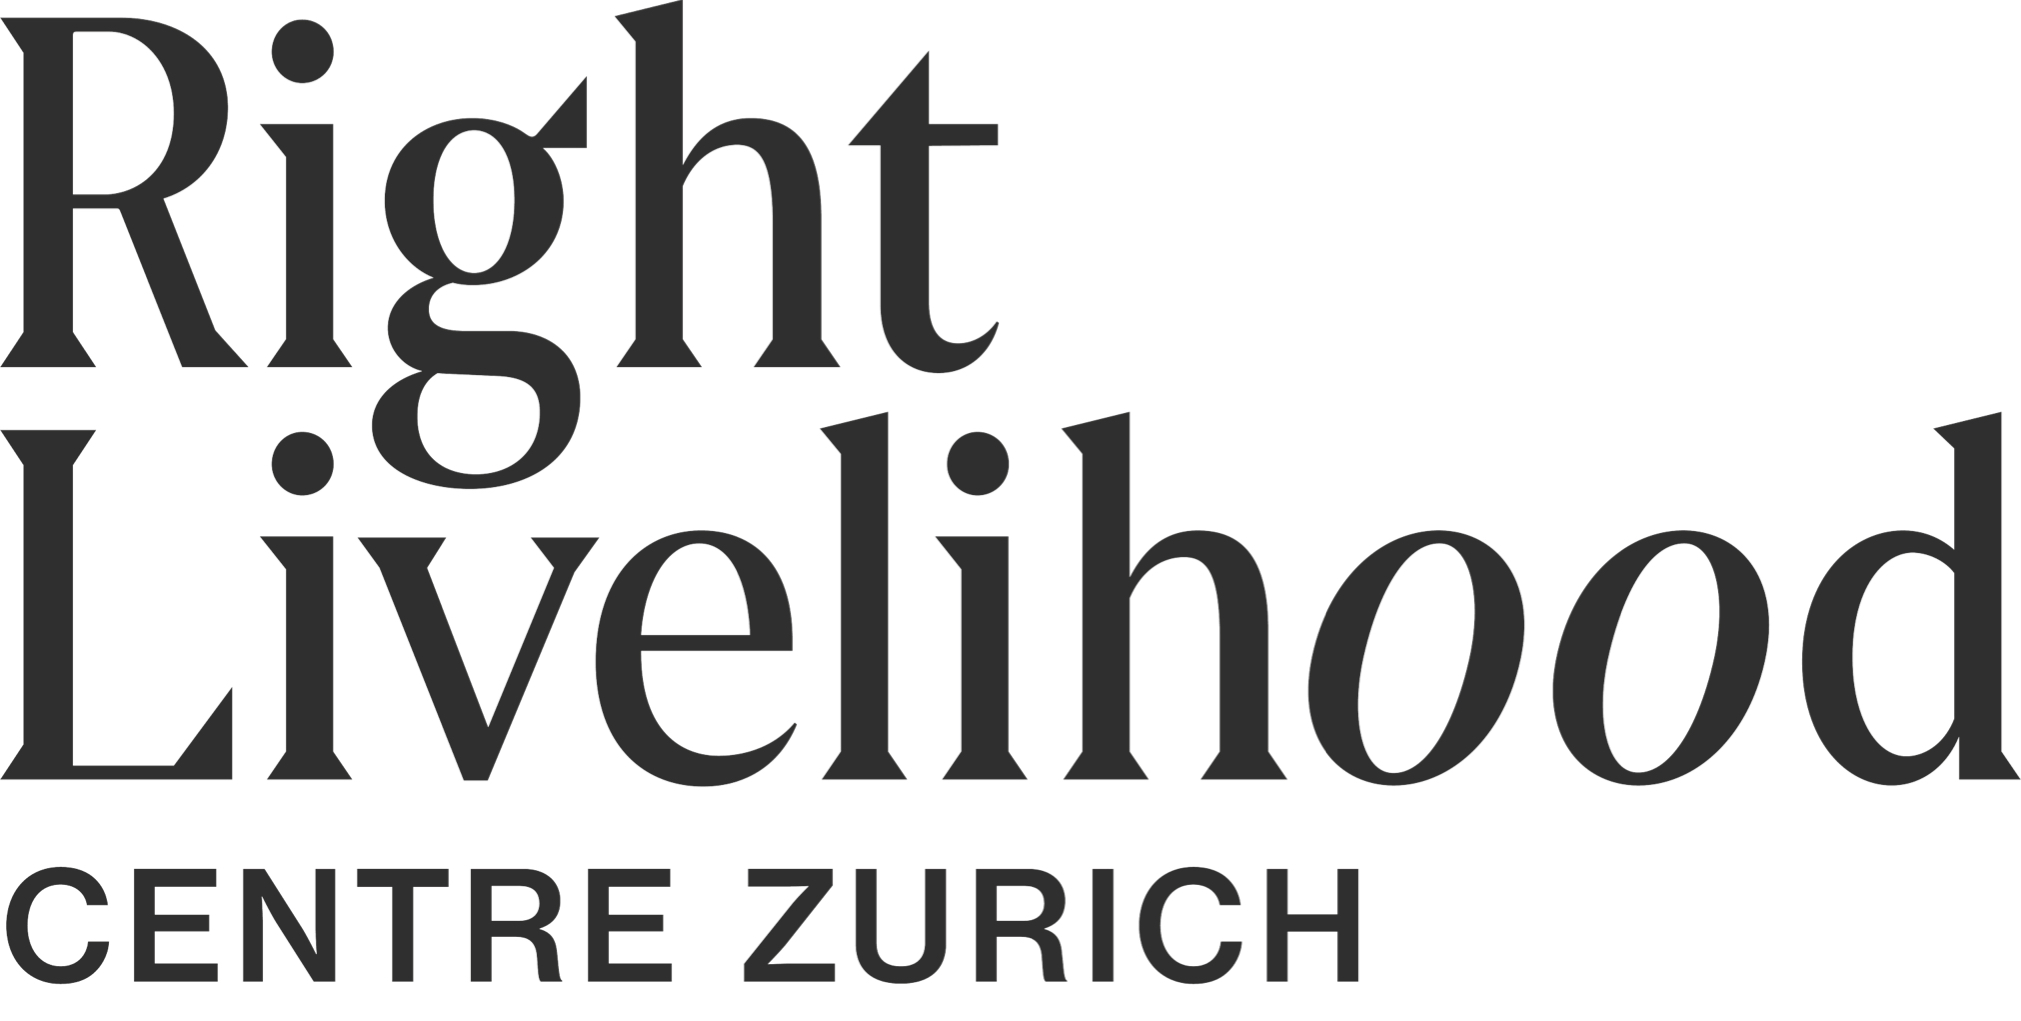 Right Livelihood Centre Zurich Logo